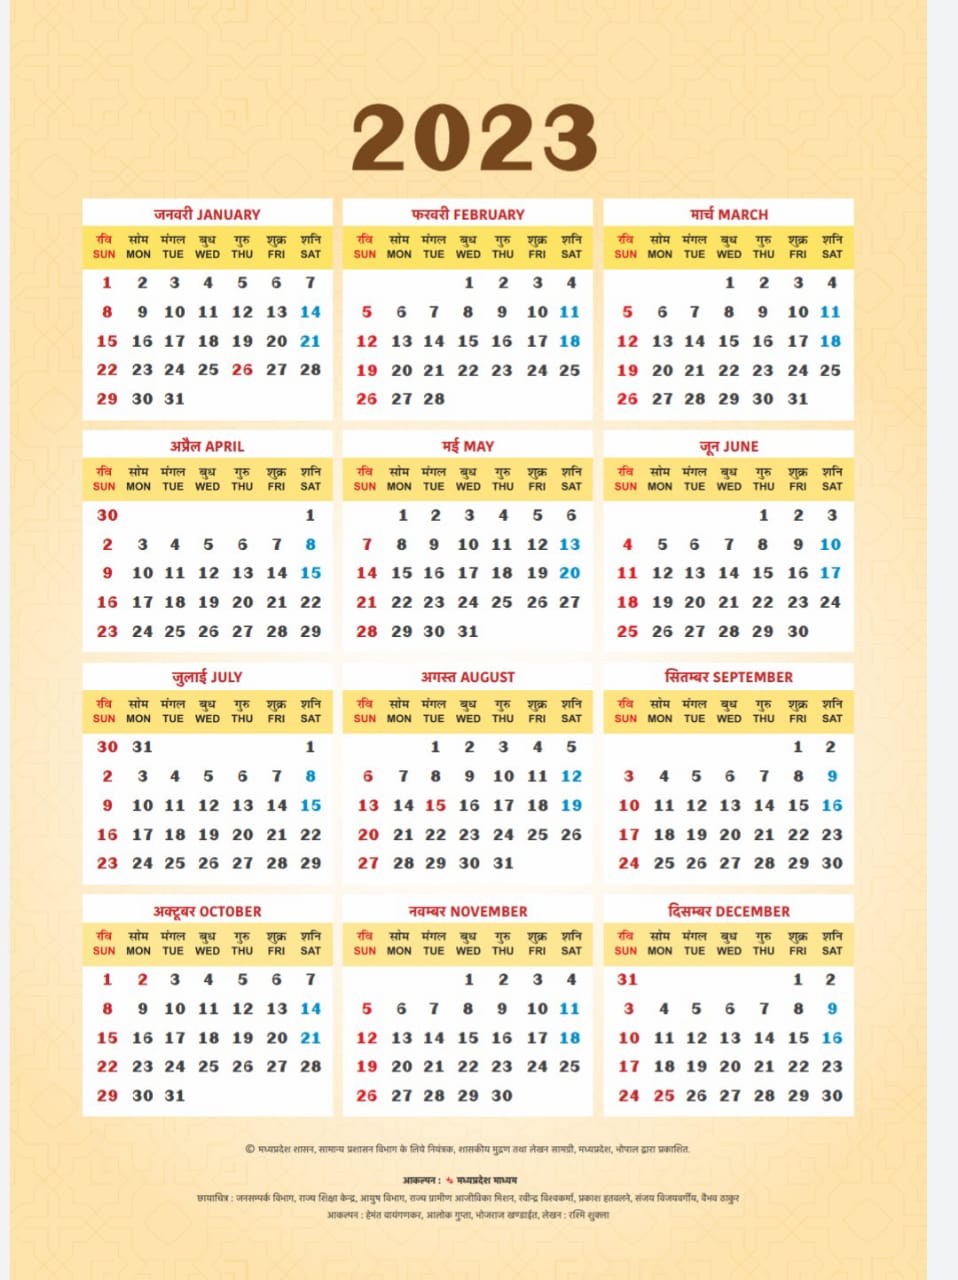 MP Government Calendar 2023